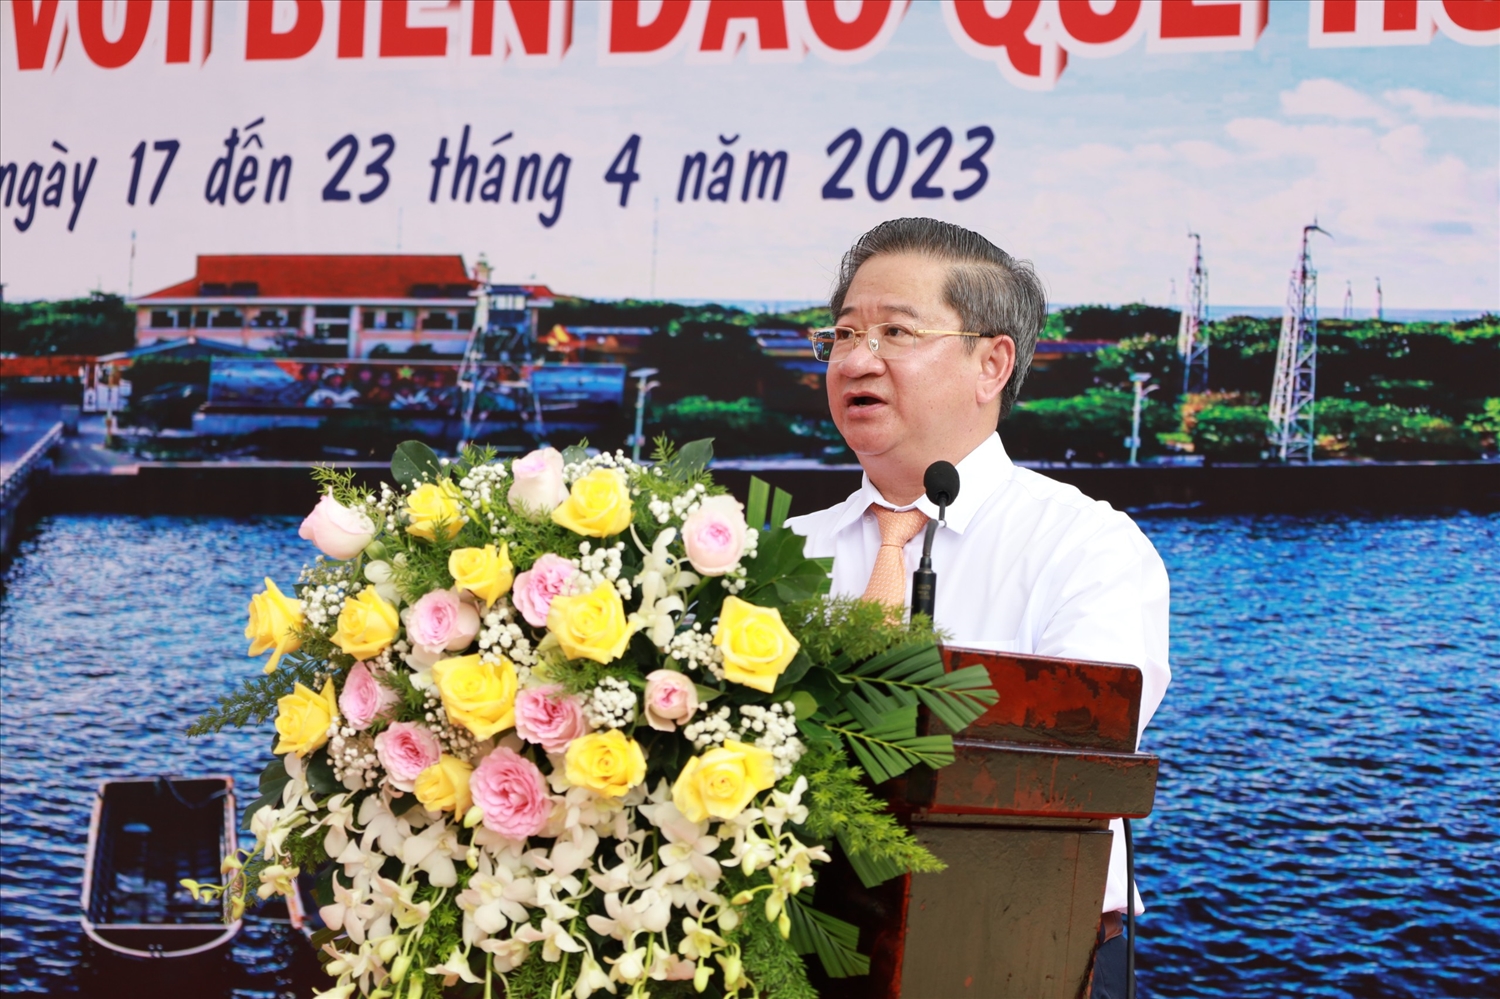 Ông Trần Việt Trường Chủ tịch UBND TP. Cần Thơ phát biểu tại buổi lễ